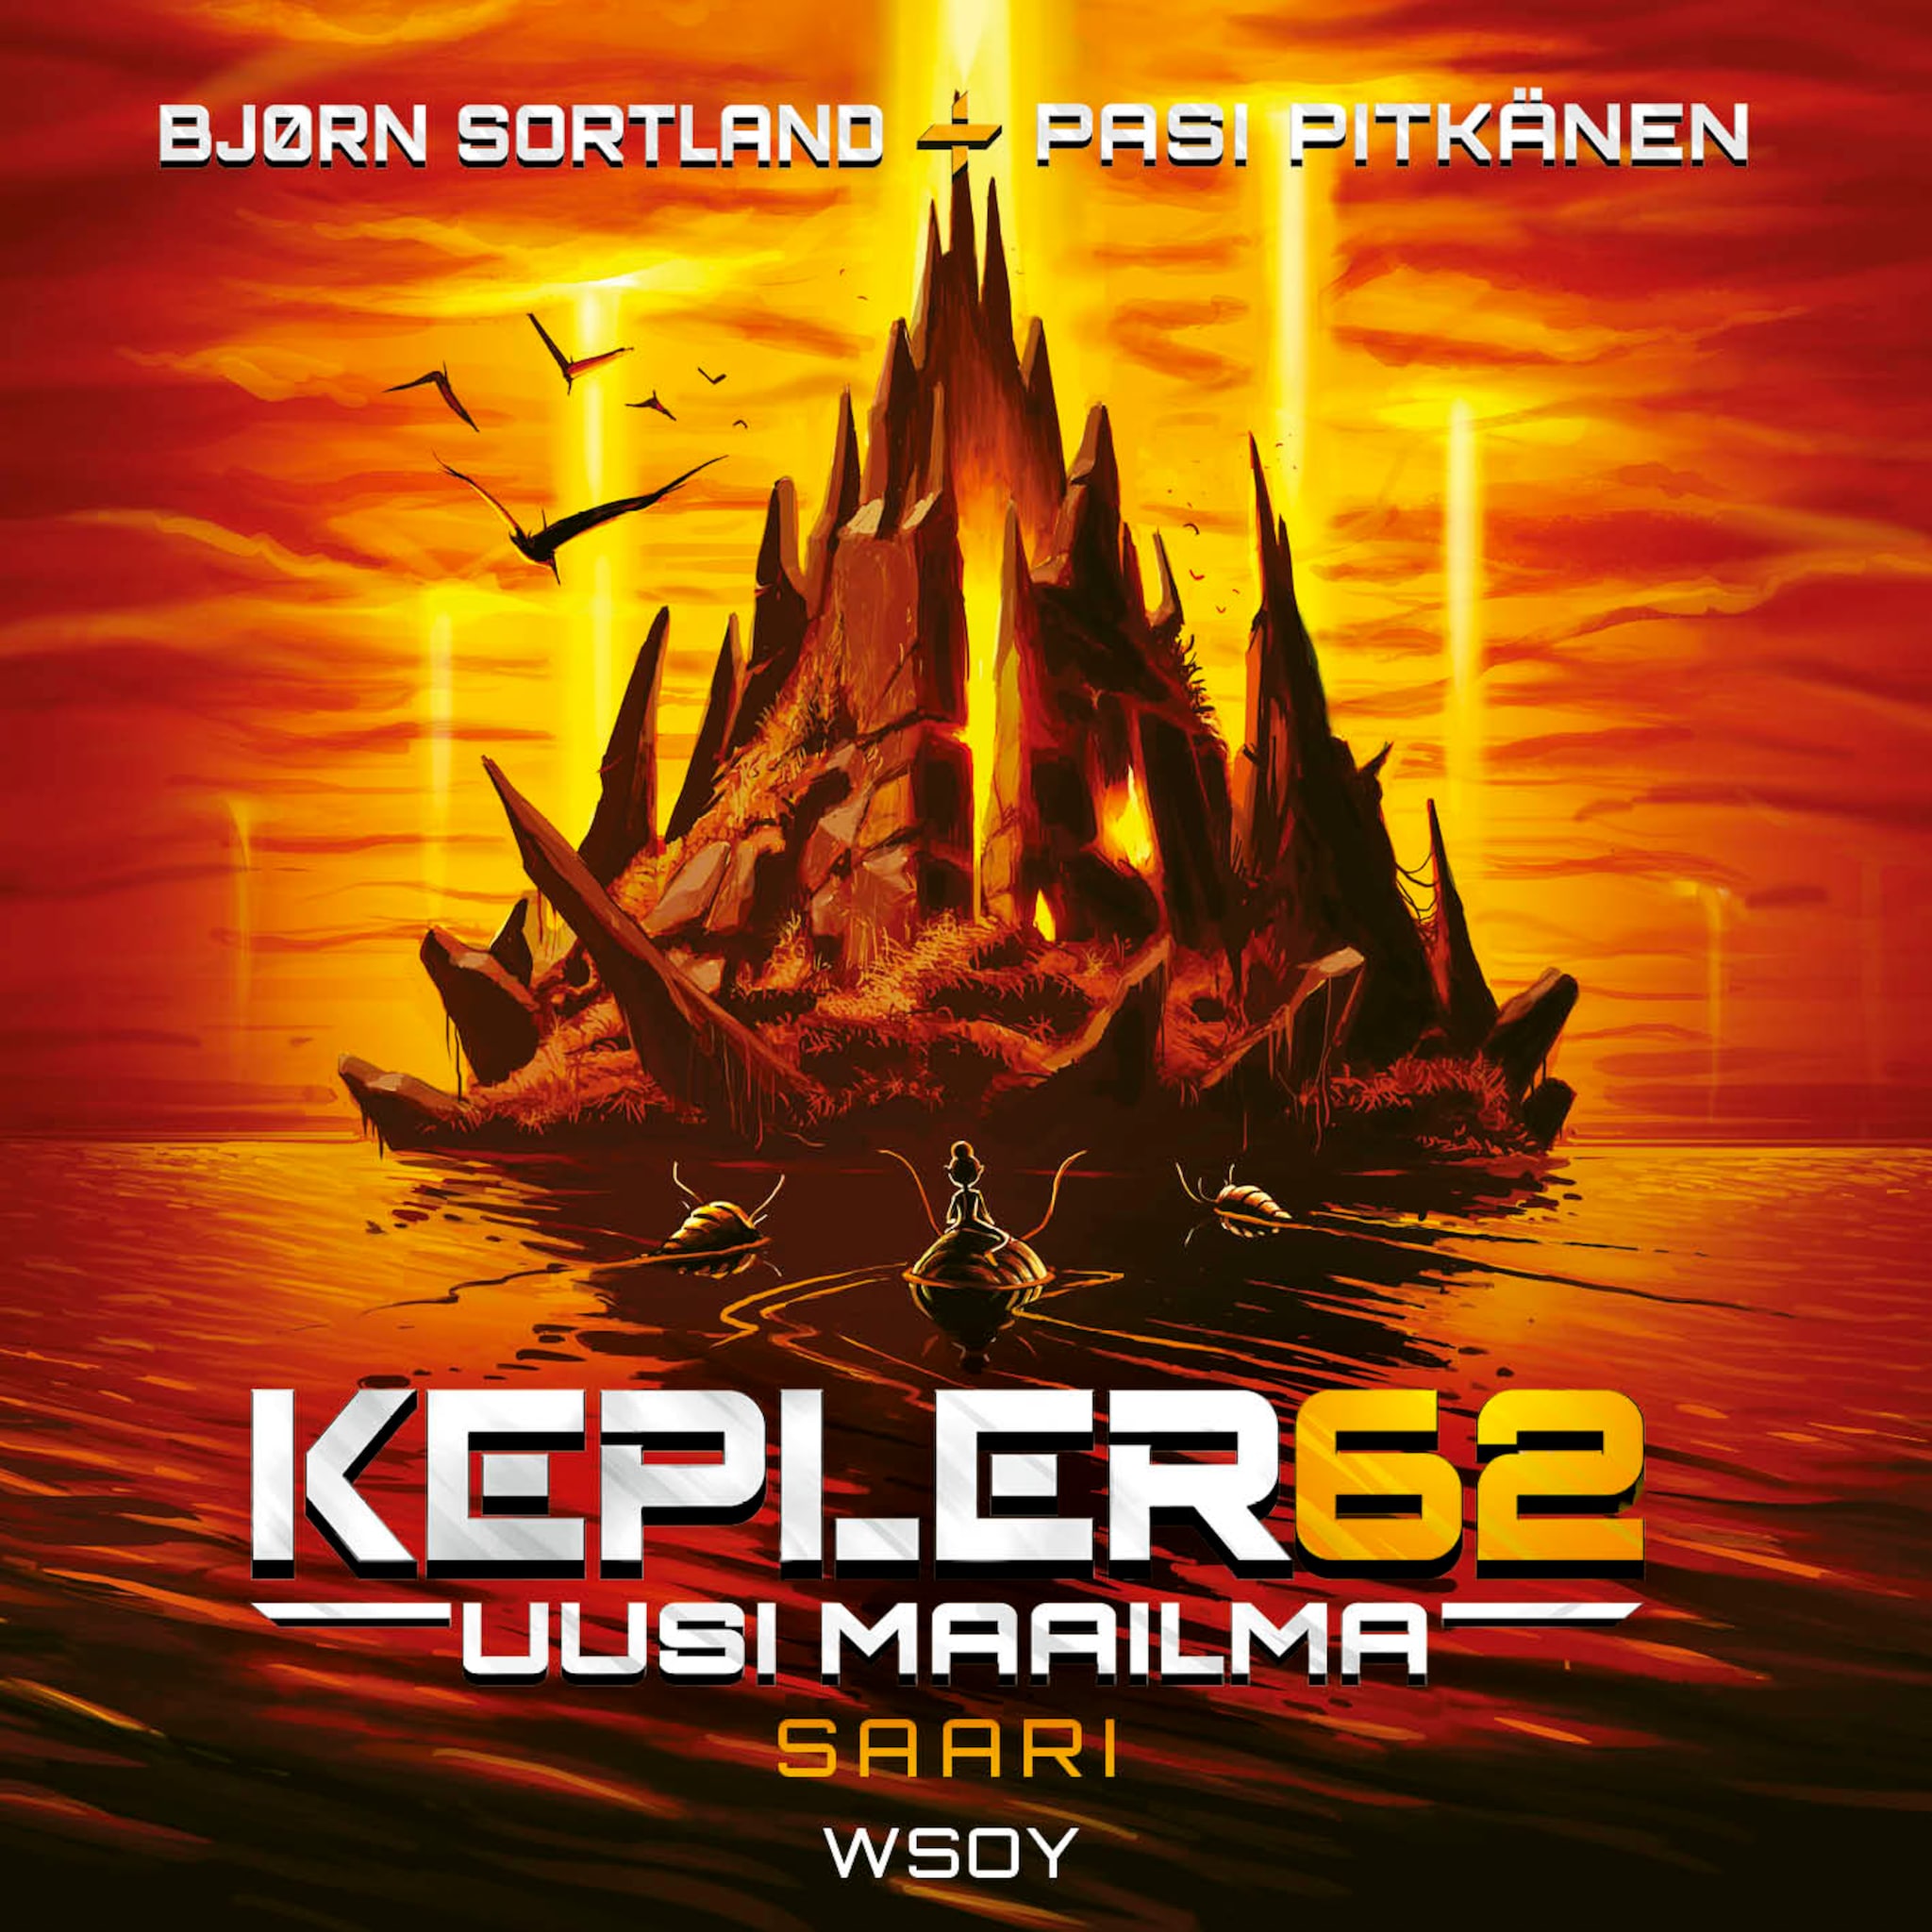 Kepler62 : uusi maailma,saari ilmaiseksi